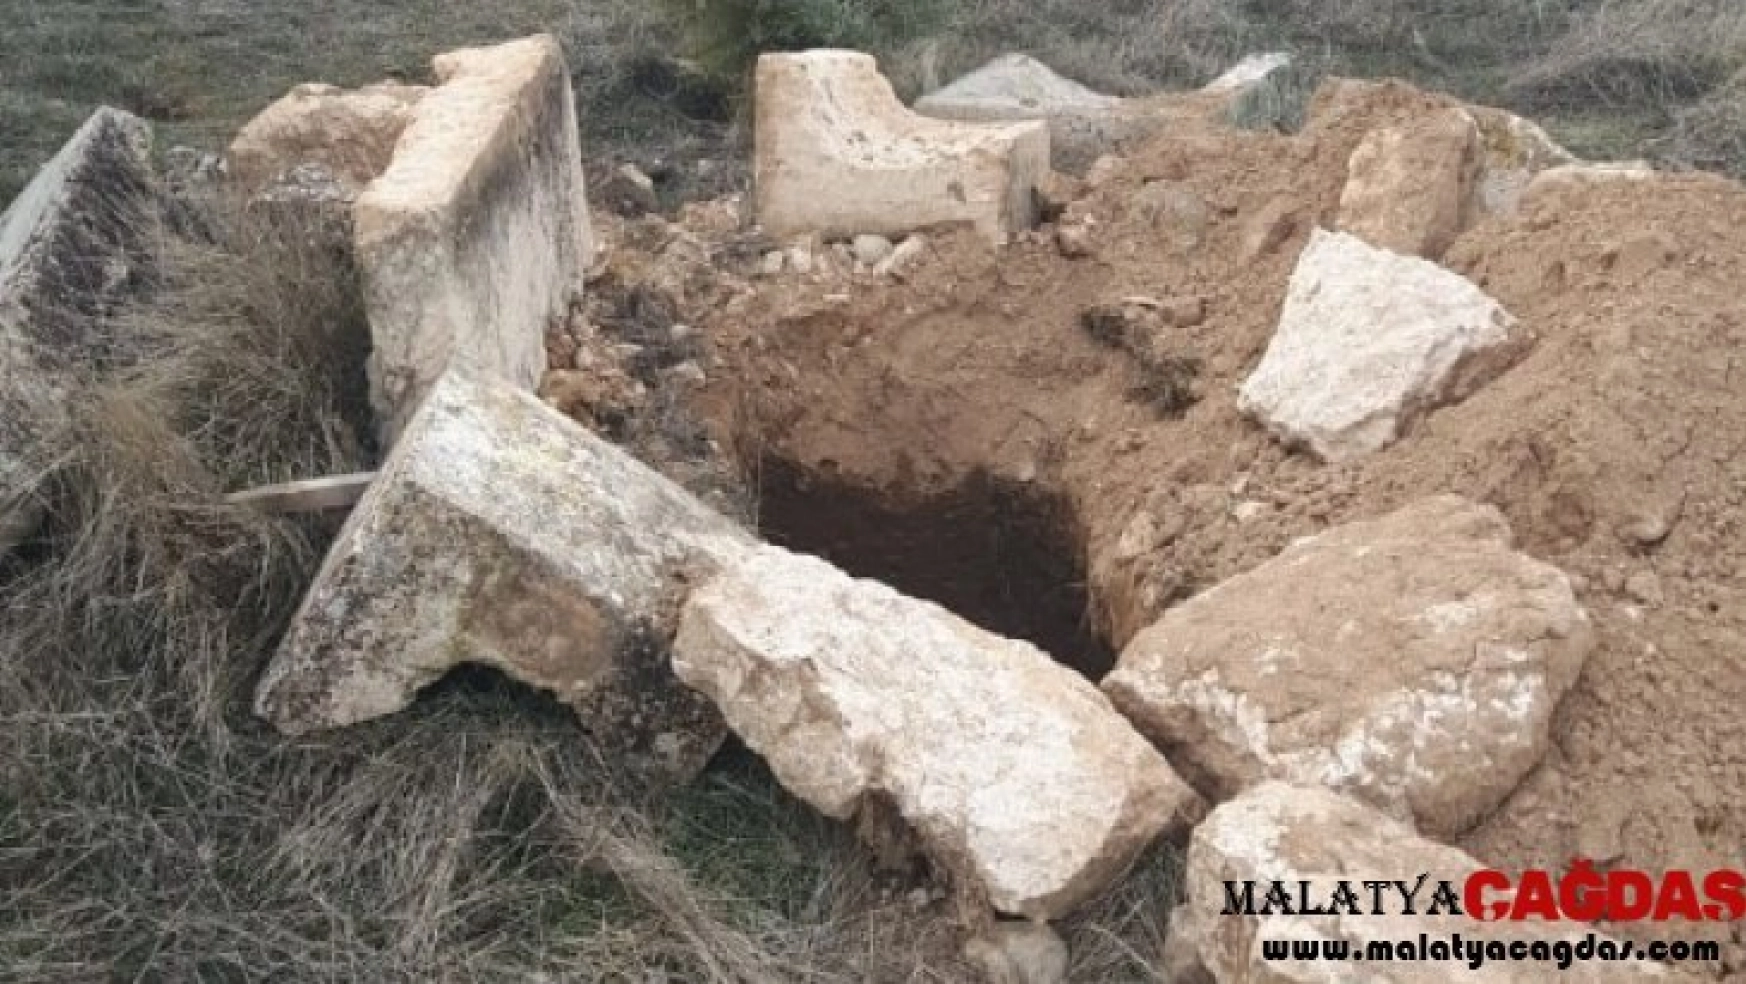 Malatya'da 4 mezar kimliği belirsiz kişiler tarafından açıldı